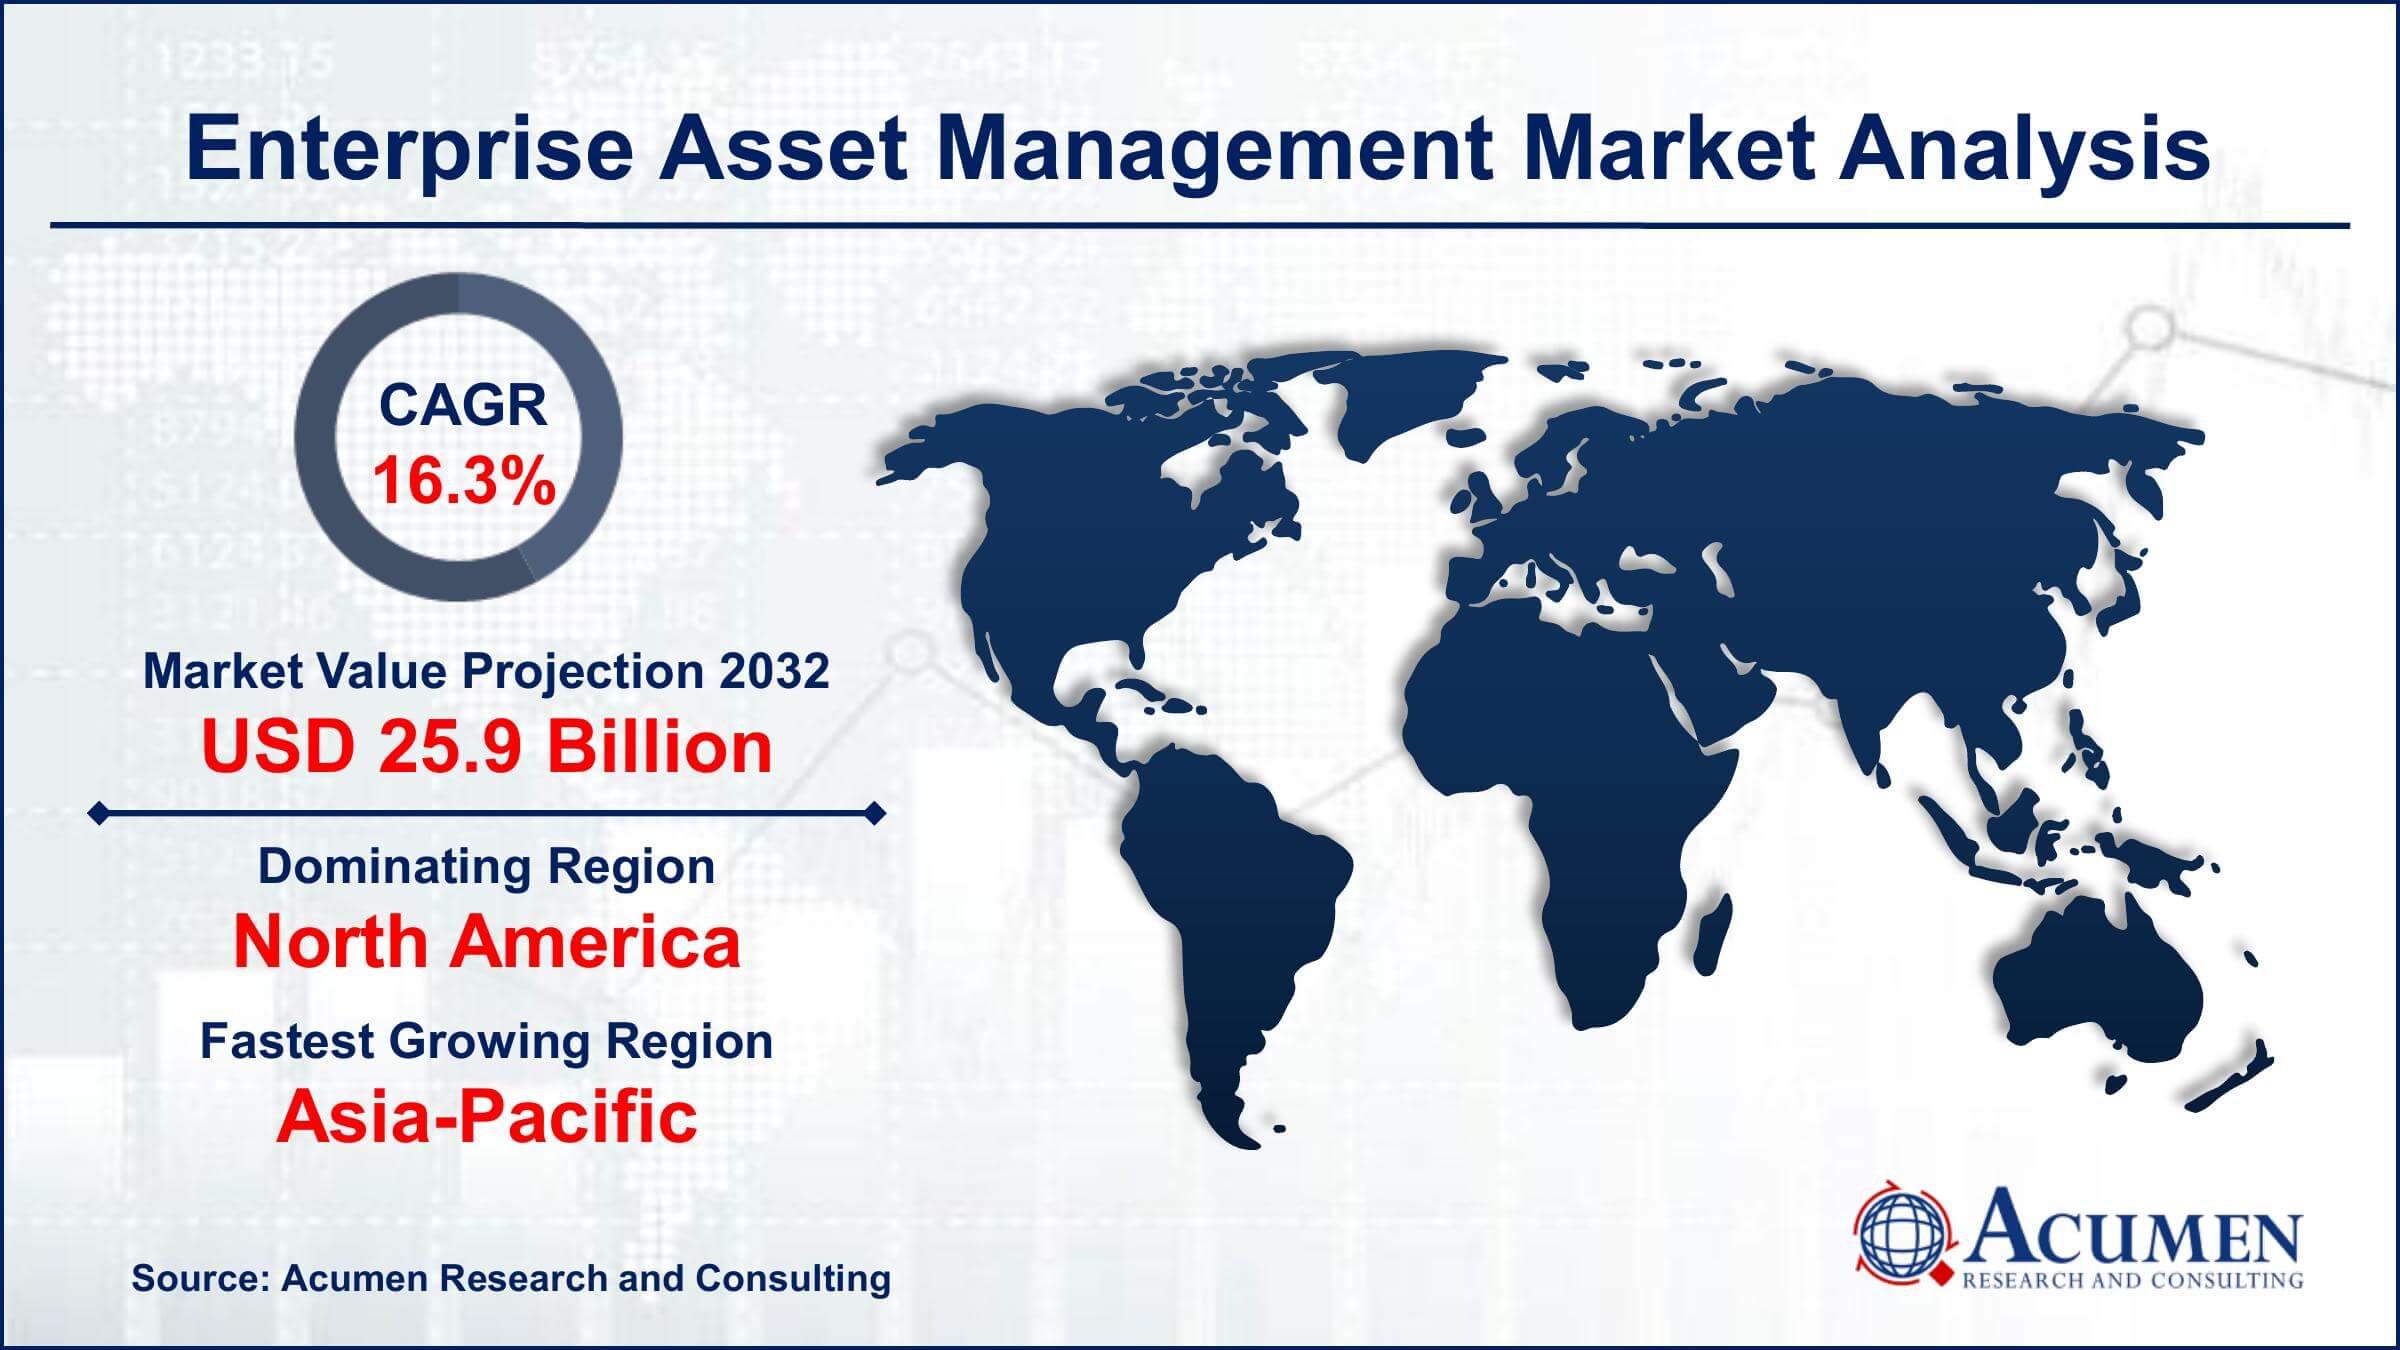 Global Enterprise Asset Management Market Trends